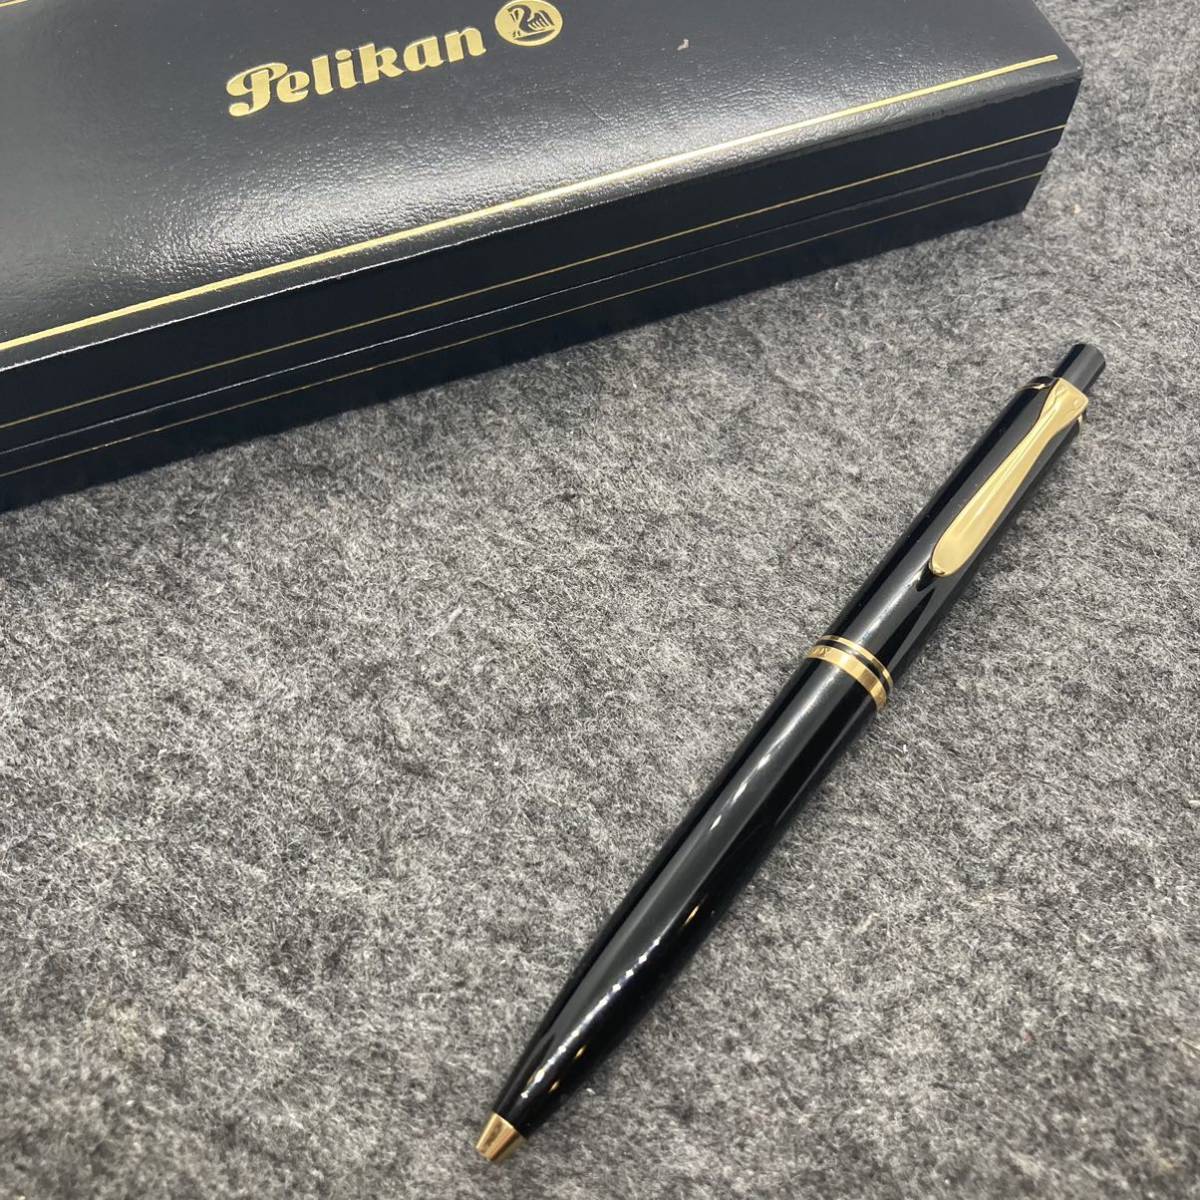 PE1800*Pelikan пеликан Hsu be полоса K400 knock тип шариковая ручка черный с коробкой * имя ввод 